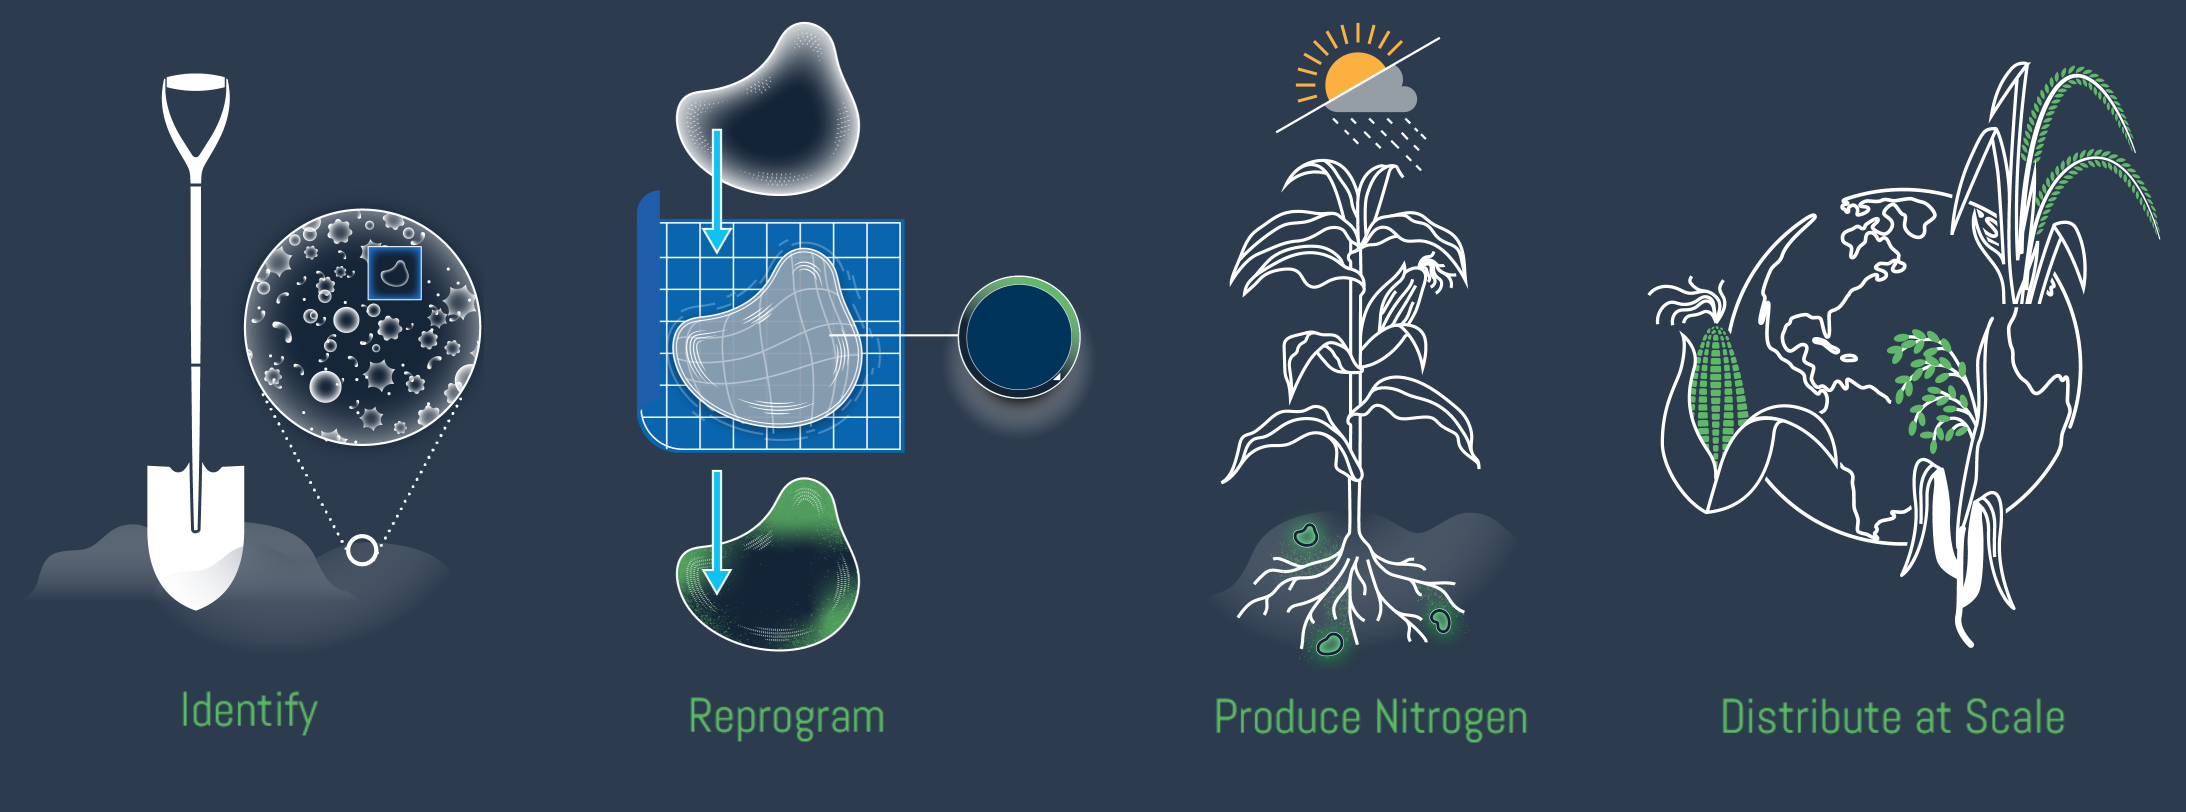 Ilustración que muestra las etapas de modificación y despliegue de microbios productores de nitrógeno.